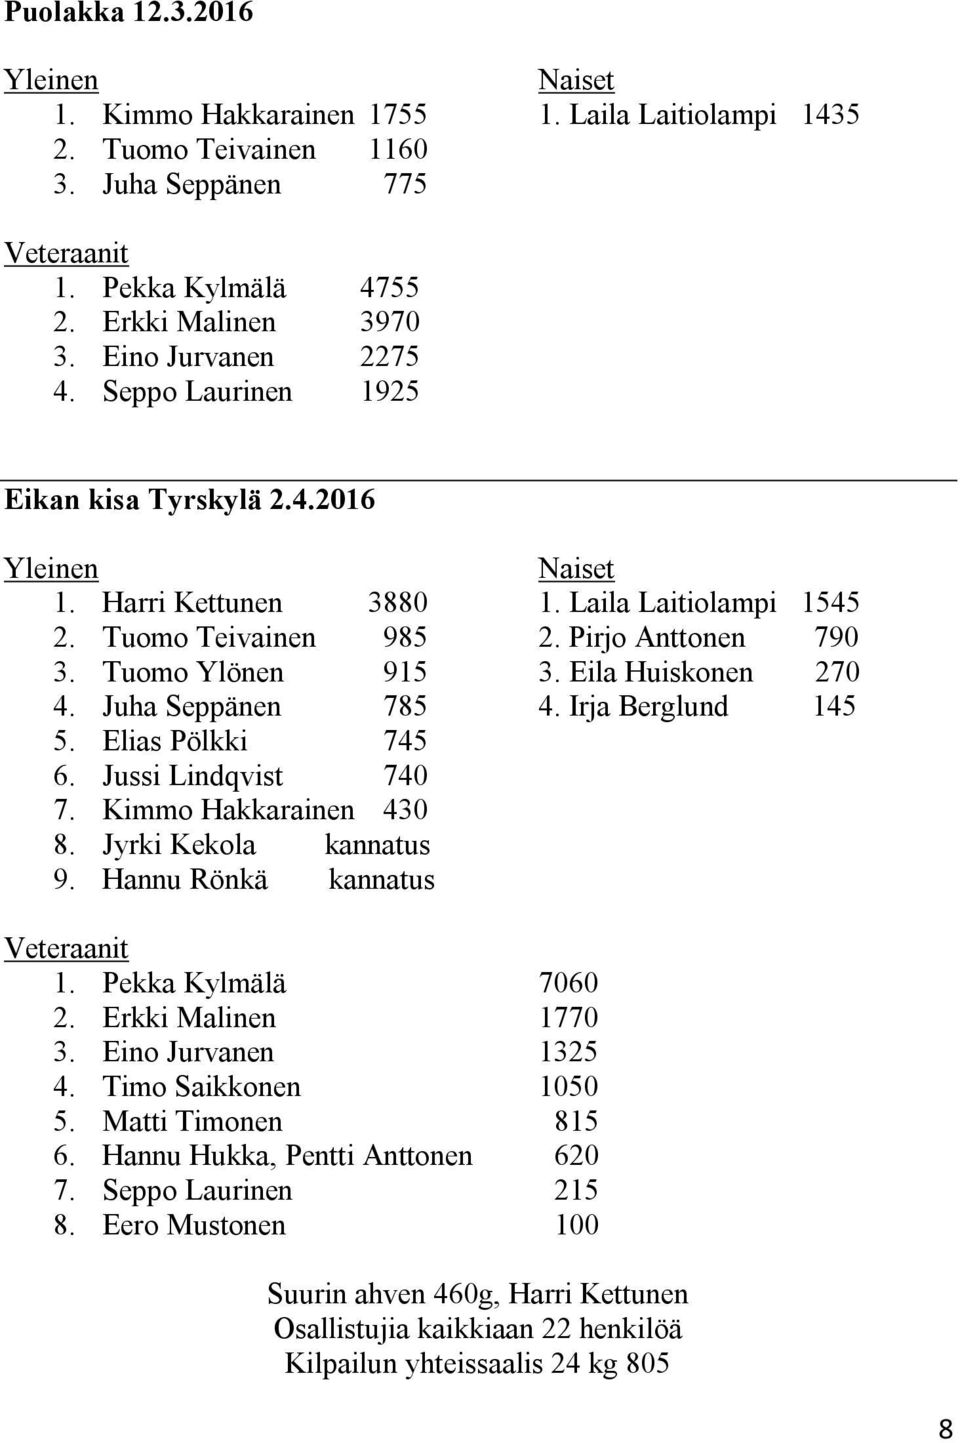 Tuomo Ylönen 915 3. Eila Huiskonen 270 4. Juha Seppänen 785 4. Irja Berglund 145 5. Elias Pölkki 745 6. Jussi Lindqvist 740 7. Kimmo Hakkarainen 430 8. Jyrki Kekola kannatus 9.